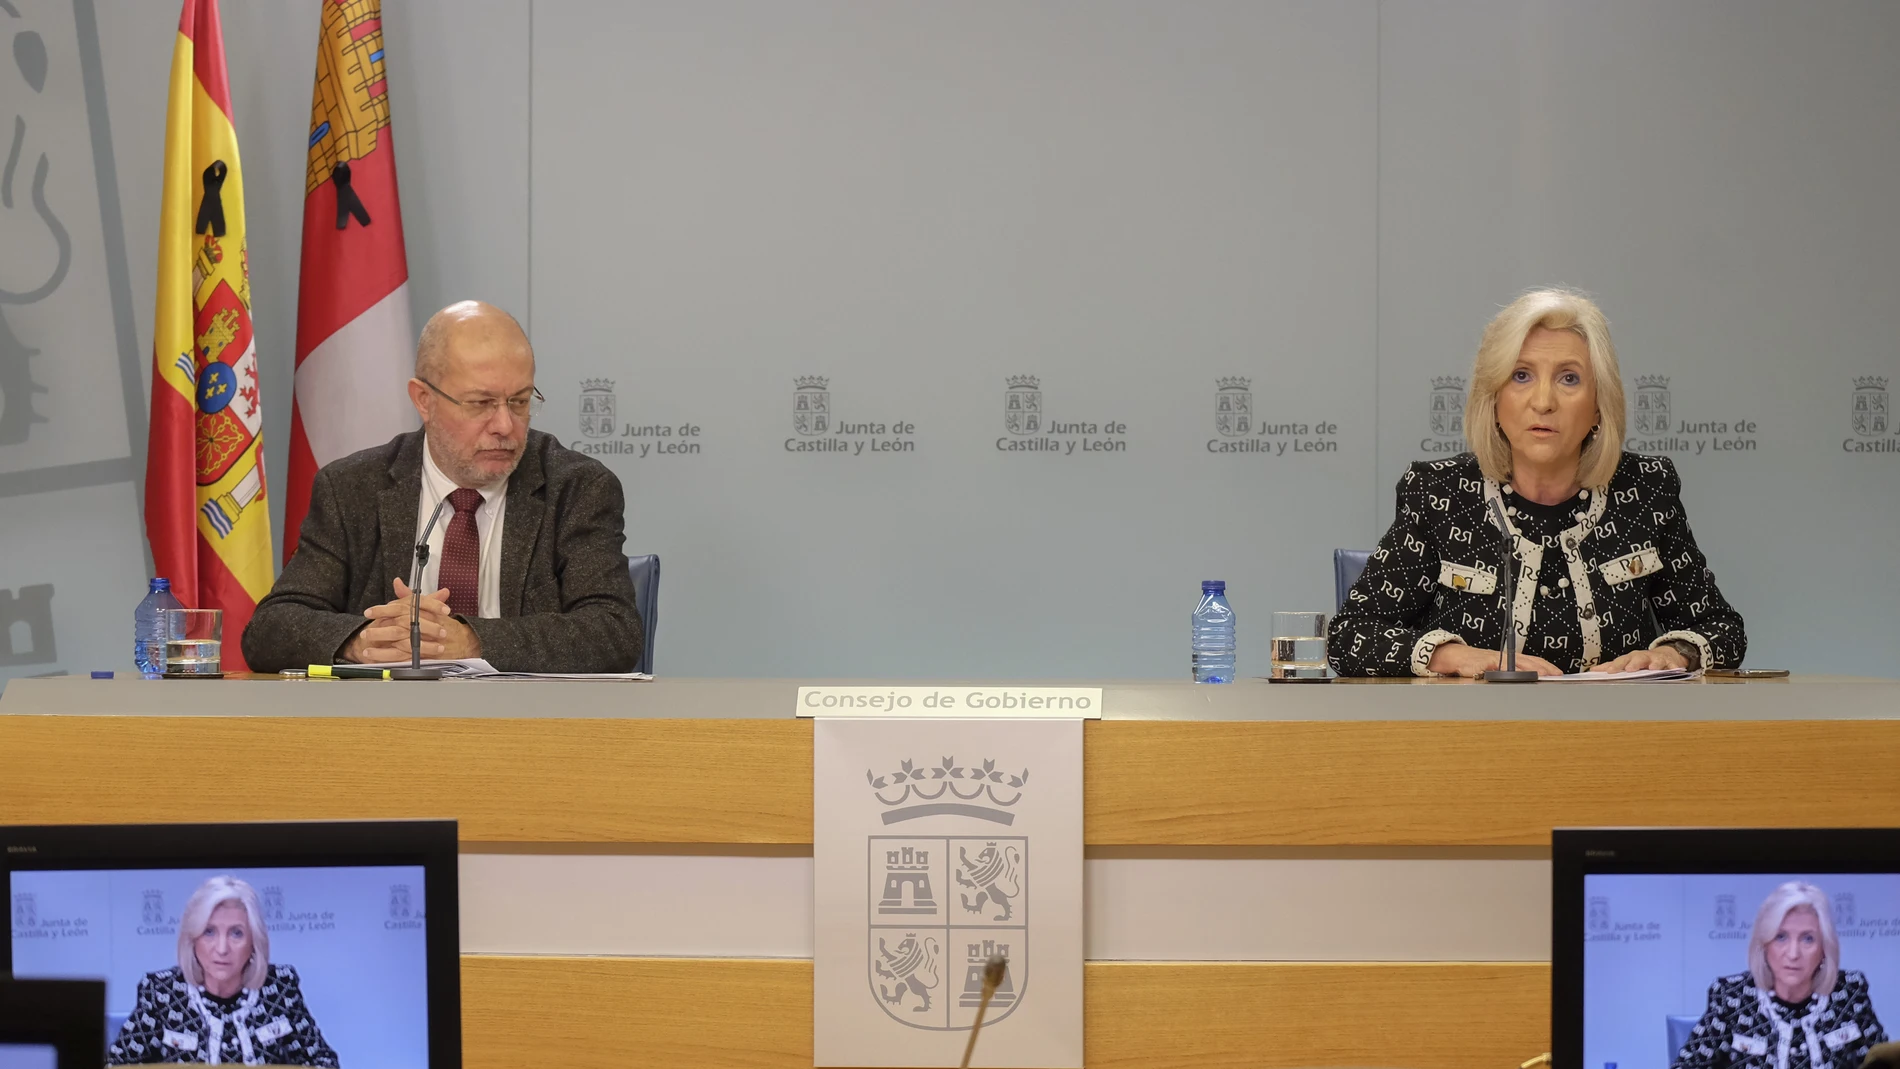 Francisco Igea y Verónica Casado durante la rueda de prensa del Consejo de Gobierno celebrado hoy